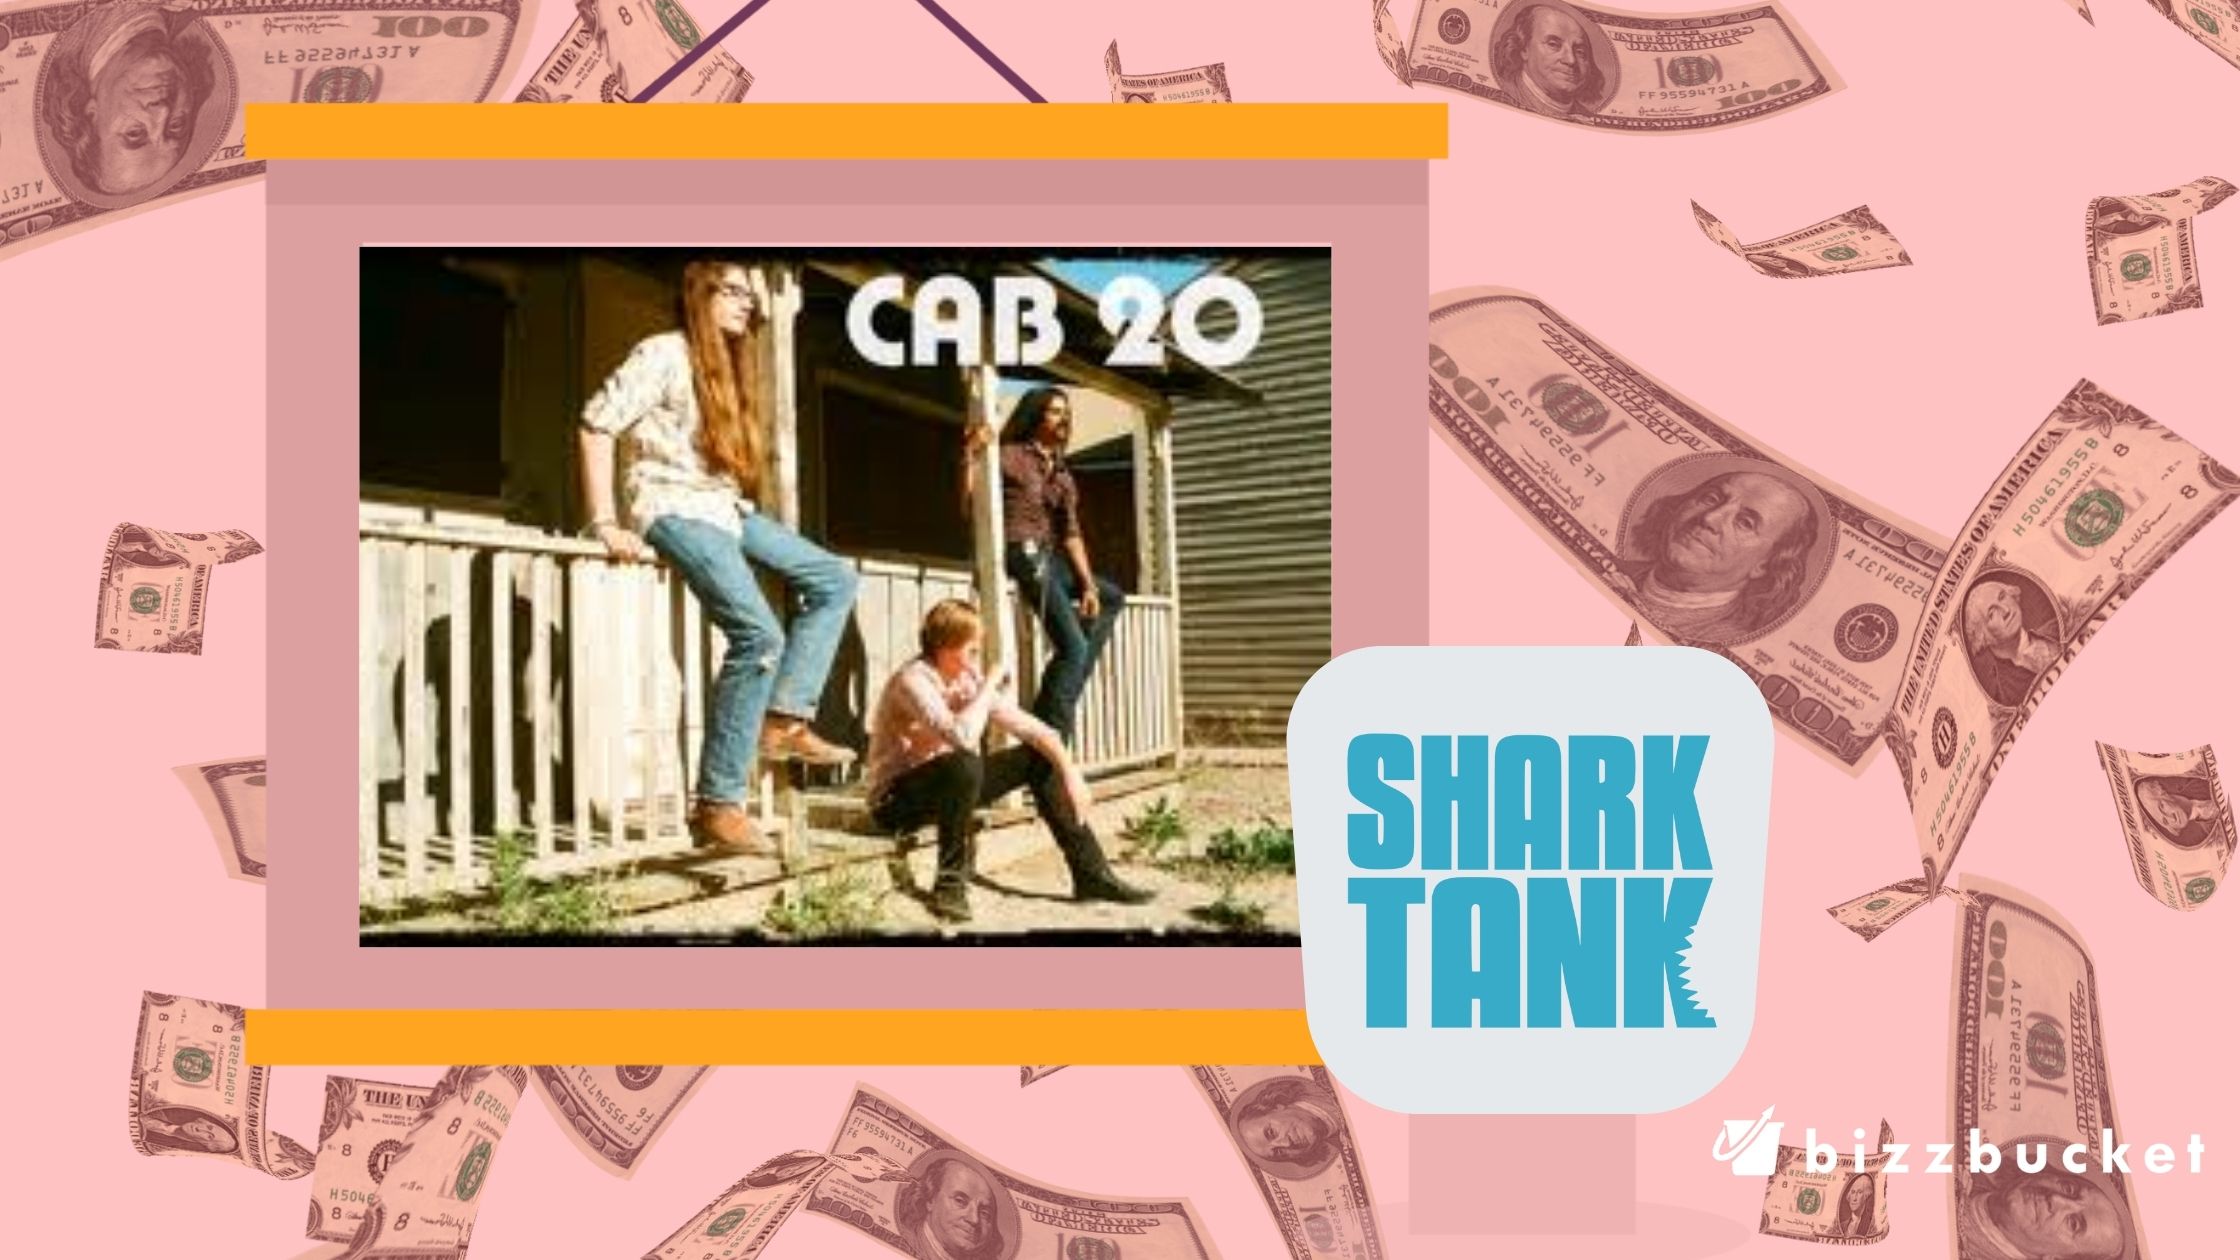 Cab 20 shark tank update